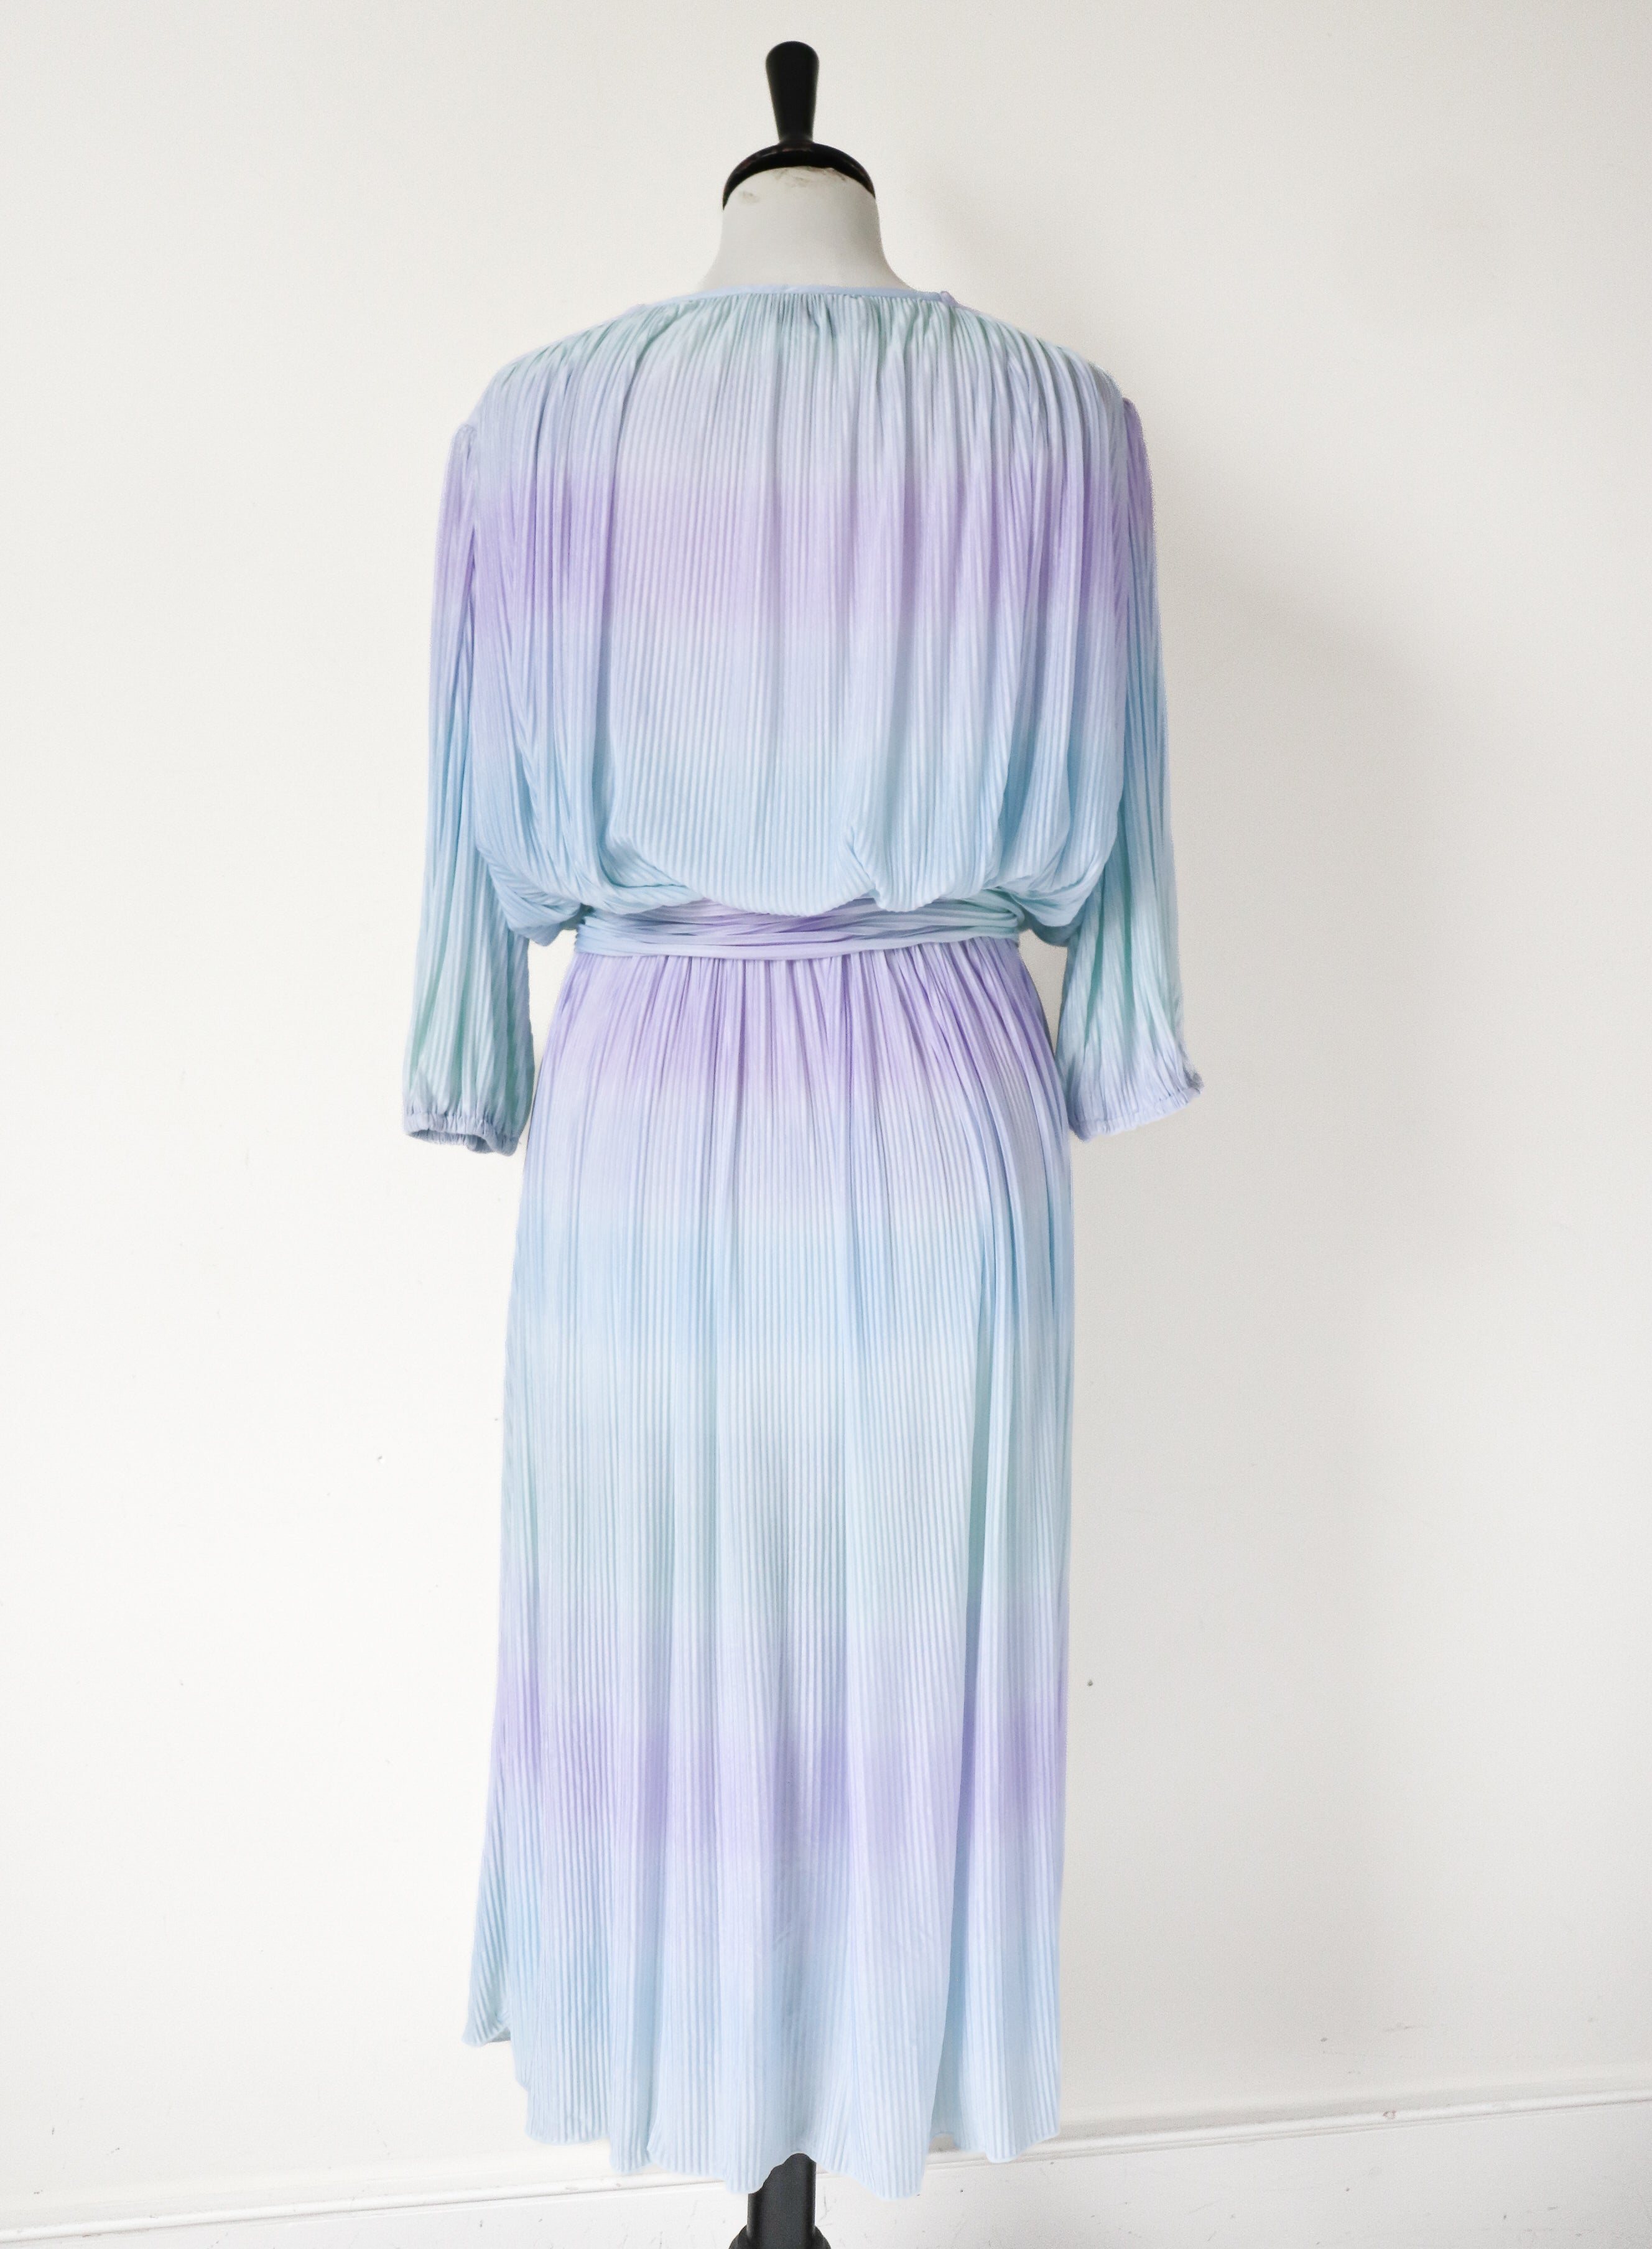 Pleated Pastel Wrap Dress - Vintage 1980s - Brigitte - Fit M / L  - UK 12 / 14